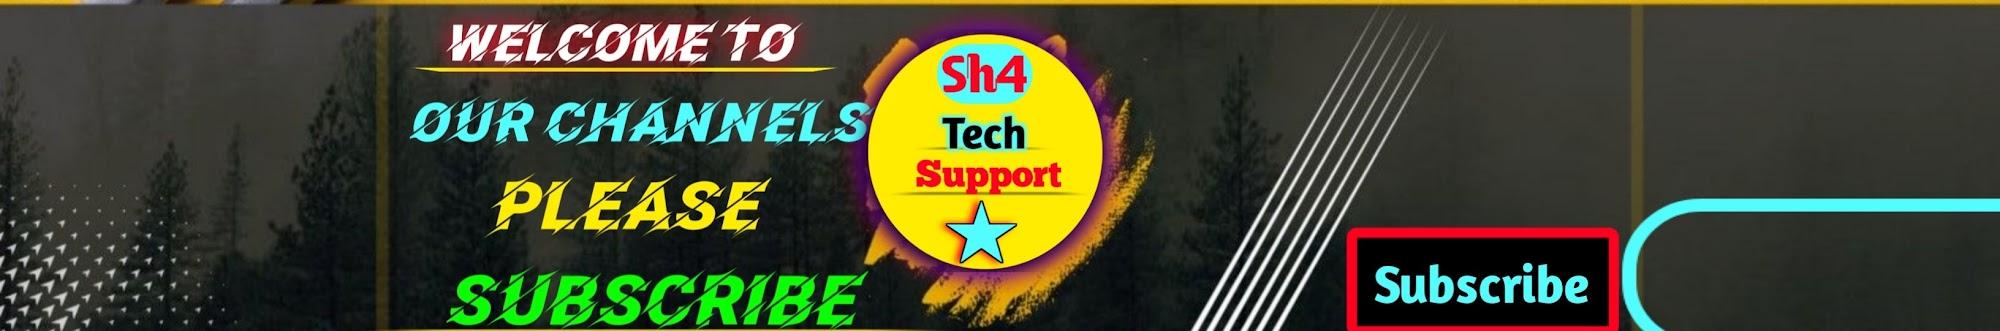 Sh4 Tech Support